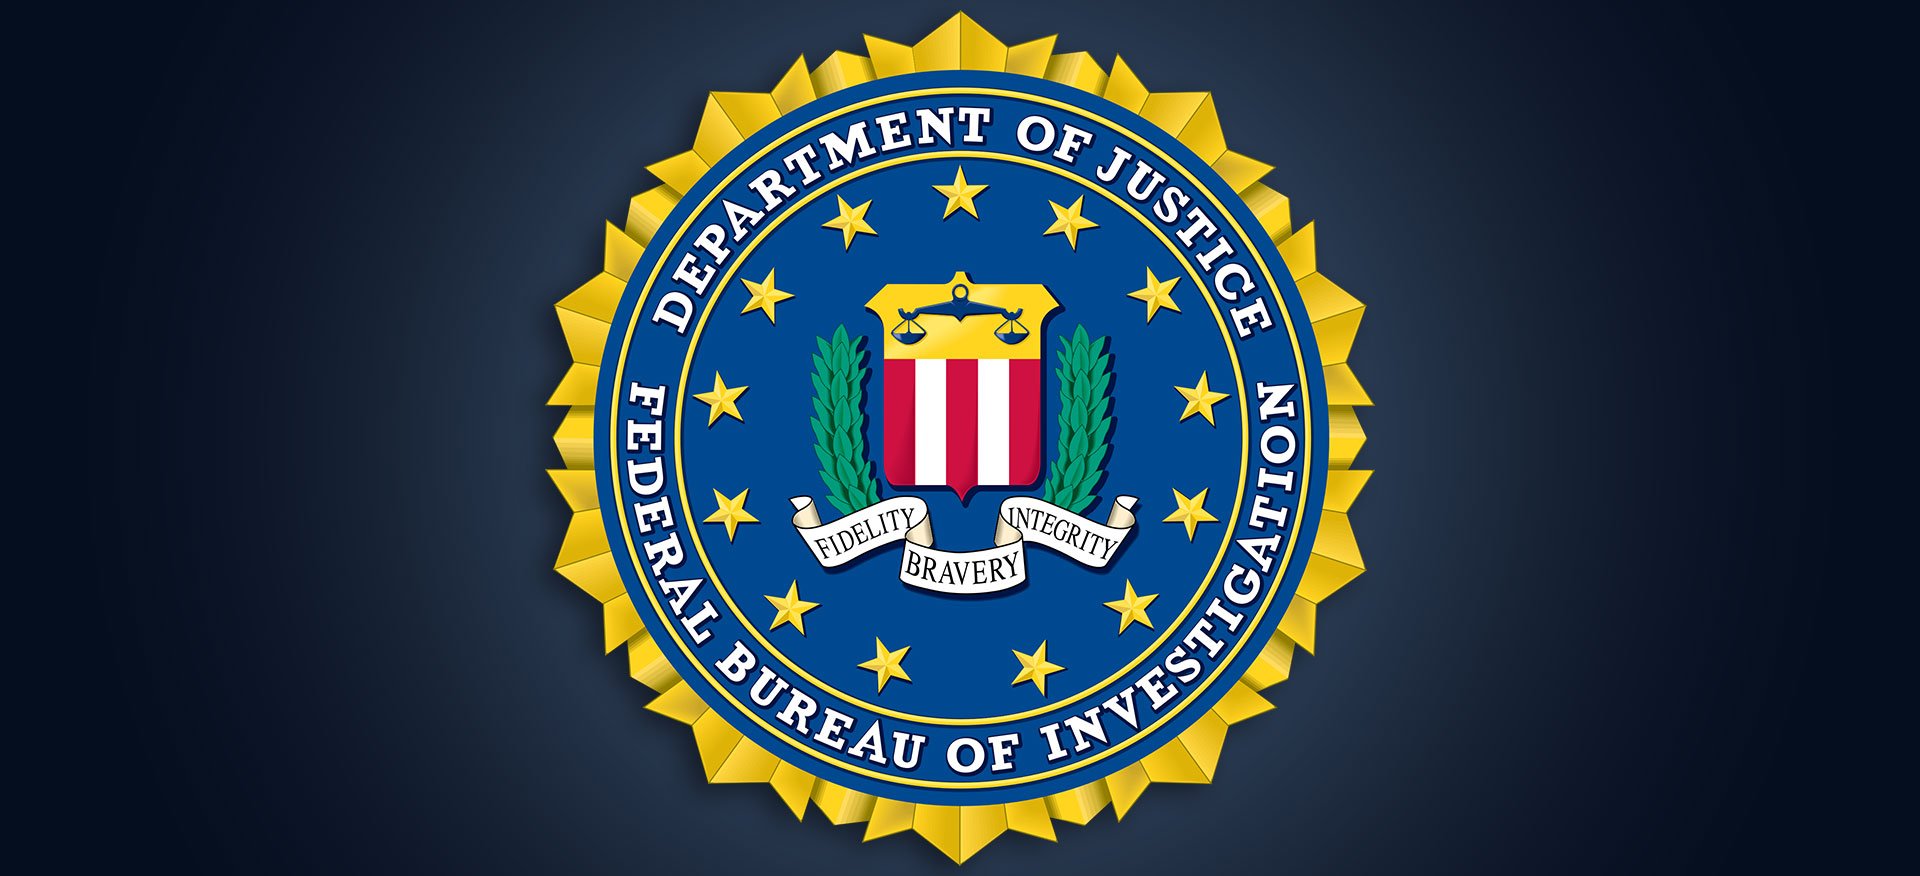 ΗΠΑ: Χάκερ παραβίασαν το δίκτυο υπολογιστών του FBI στα γραφεία της υπηρεσίας στη Νέα Υόρκη